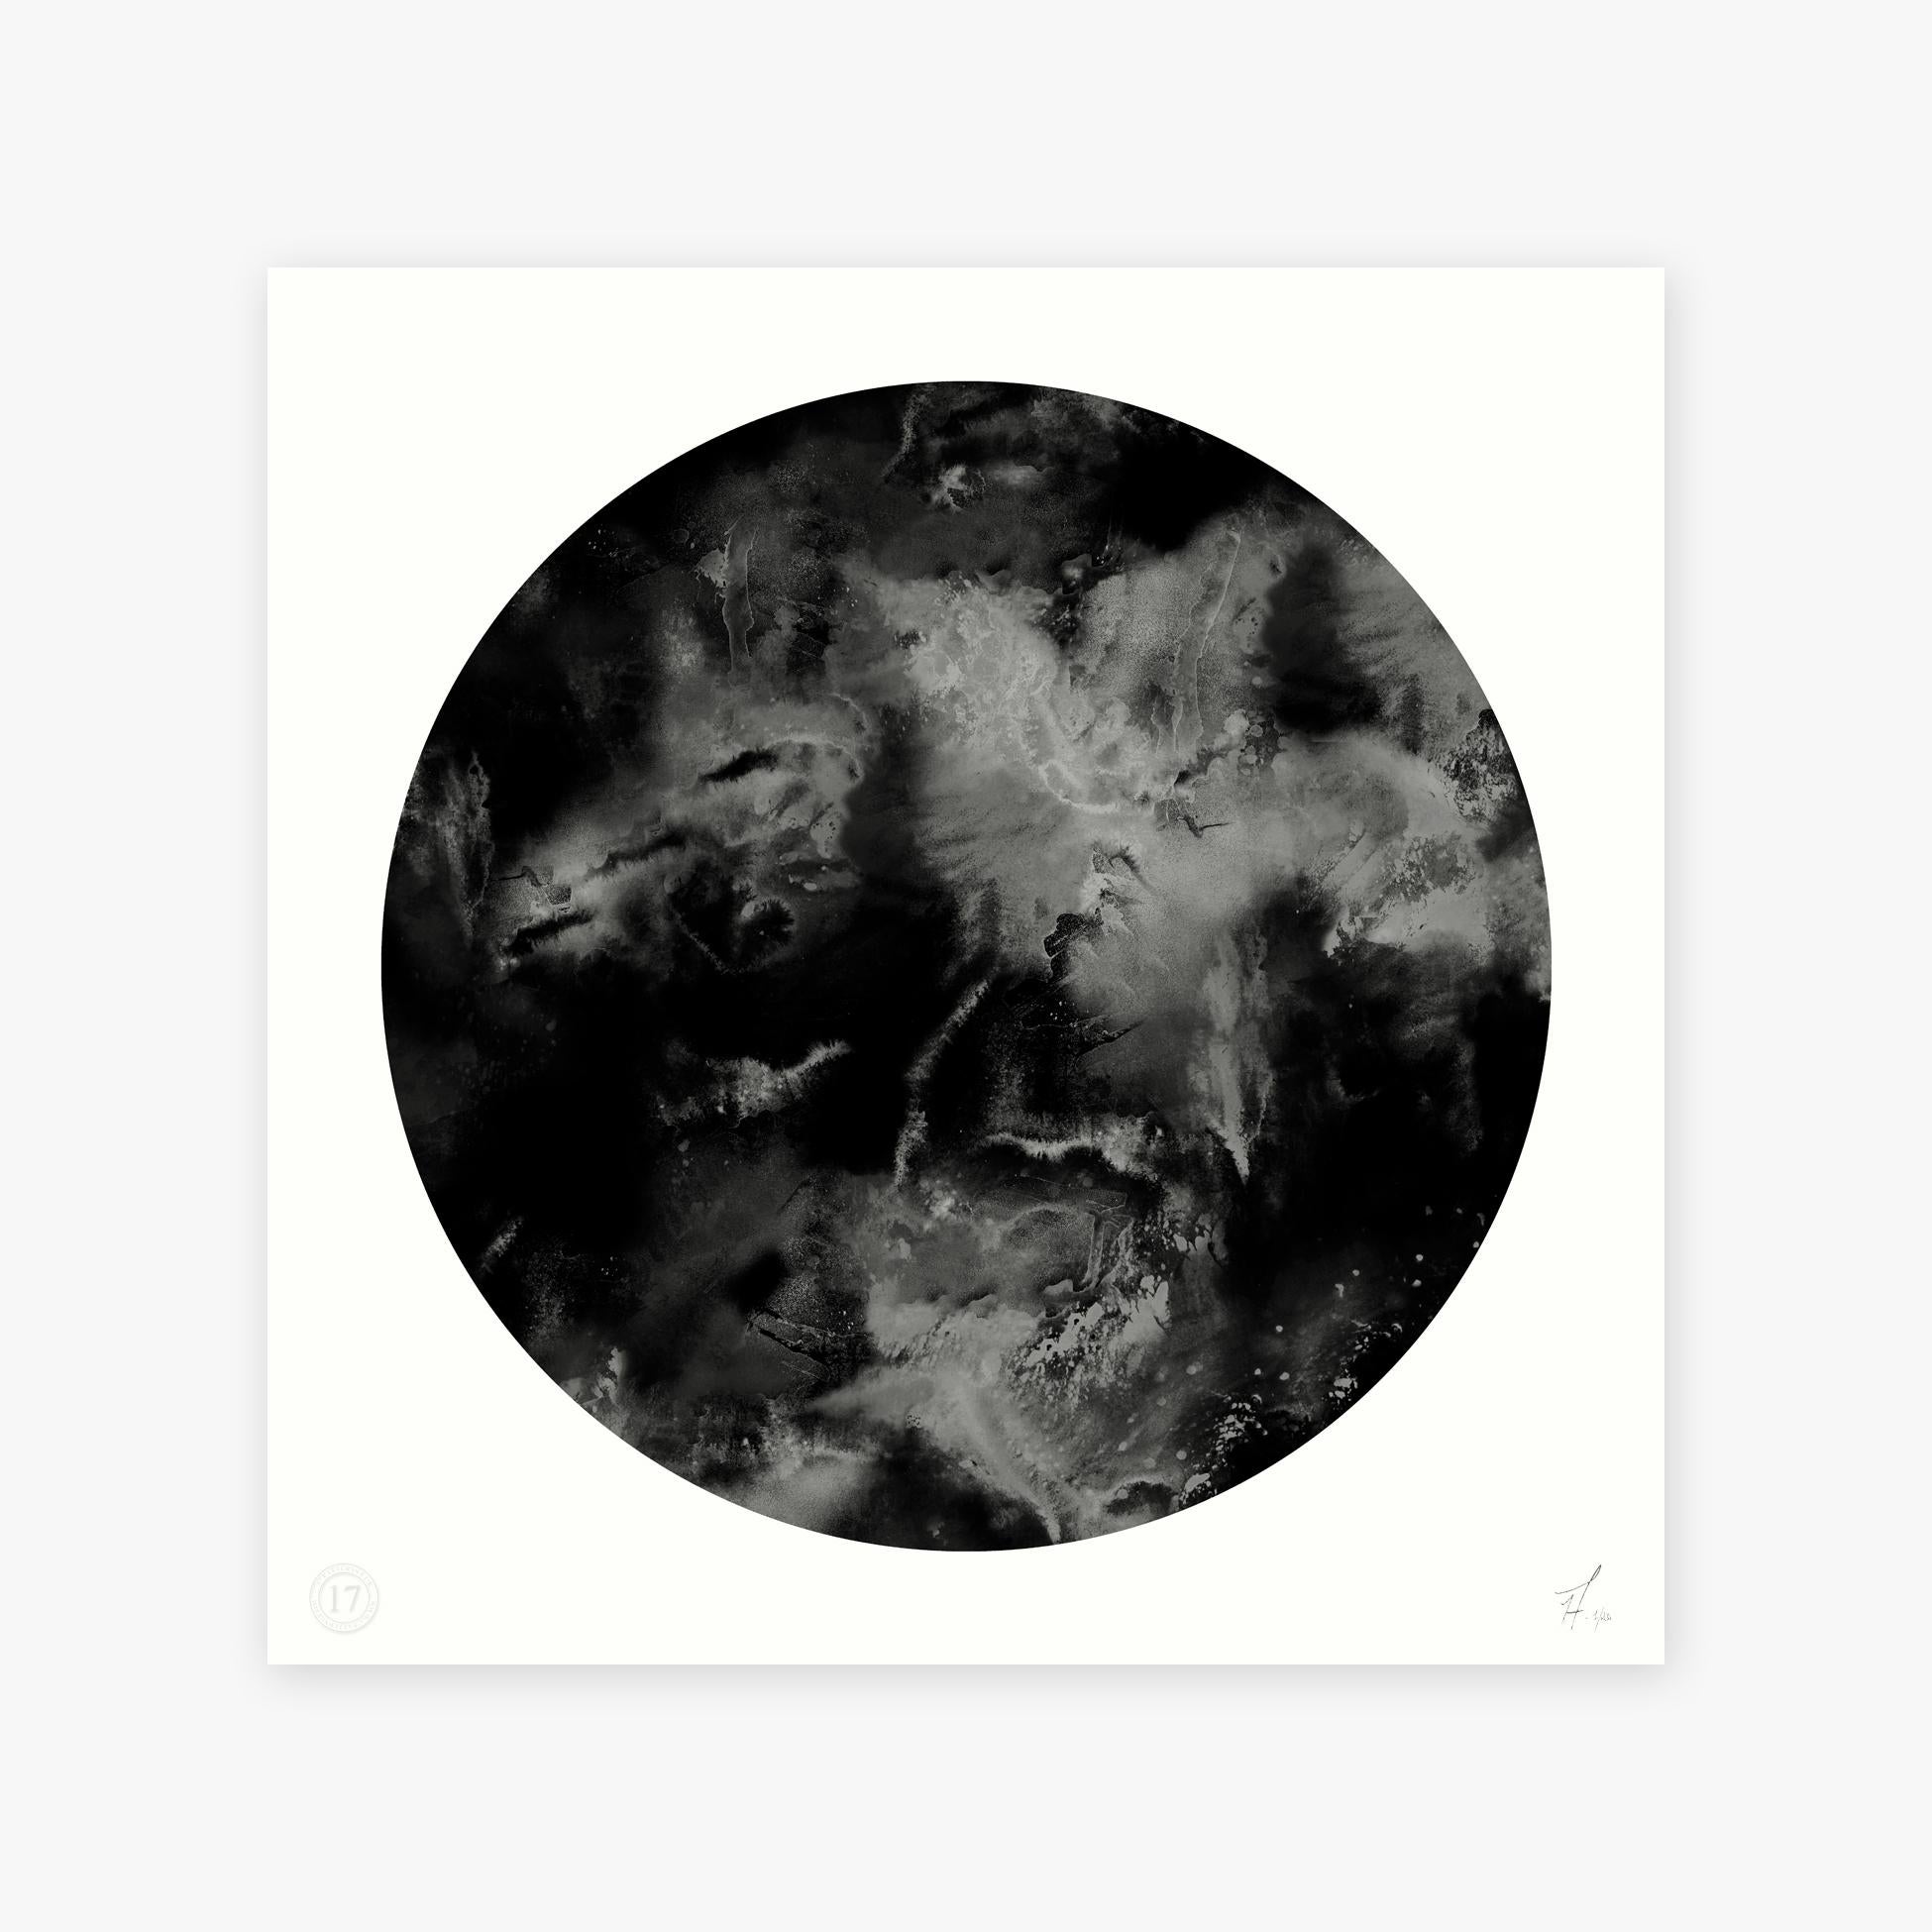 Tile: Cloudbusting Black Circle
Artist: 17 patterns with artists Nosca Inc & Paris
Description: Archival Giclee art print on German etch 310gsm paper 
Colour: Black and grey
Size options: 80 x 80cm, 60 x 60cm, 40 x 40cm
Edition: